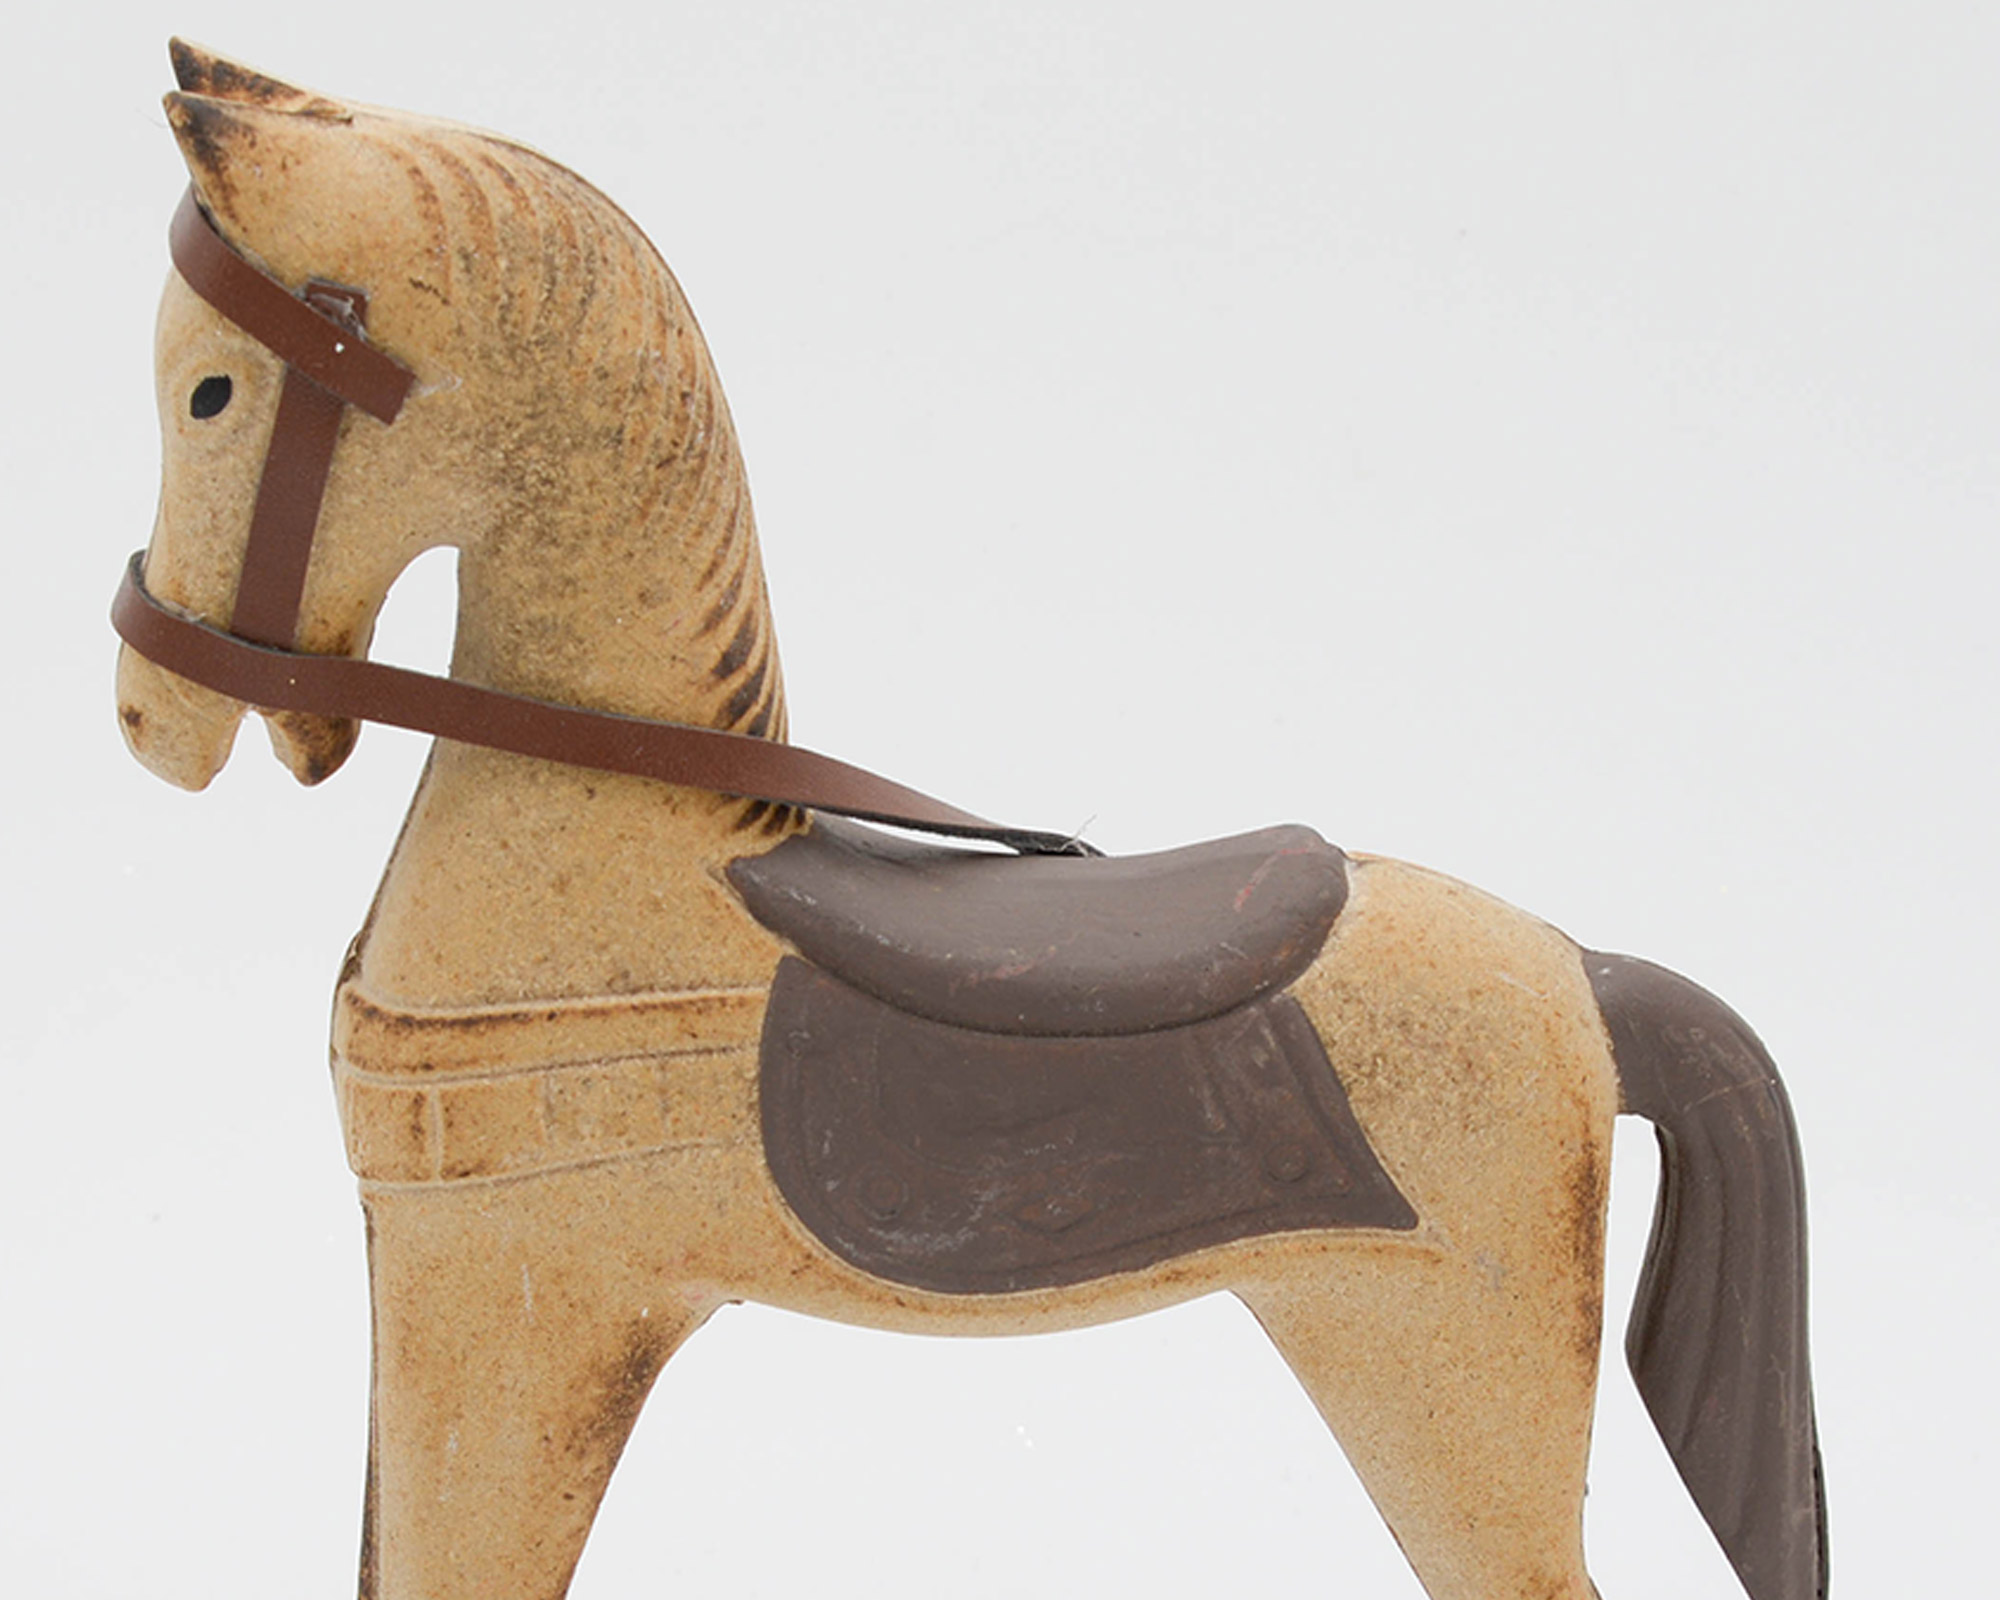 Cavallo a dondolo in legno — Oggettistica Natalizia